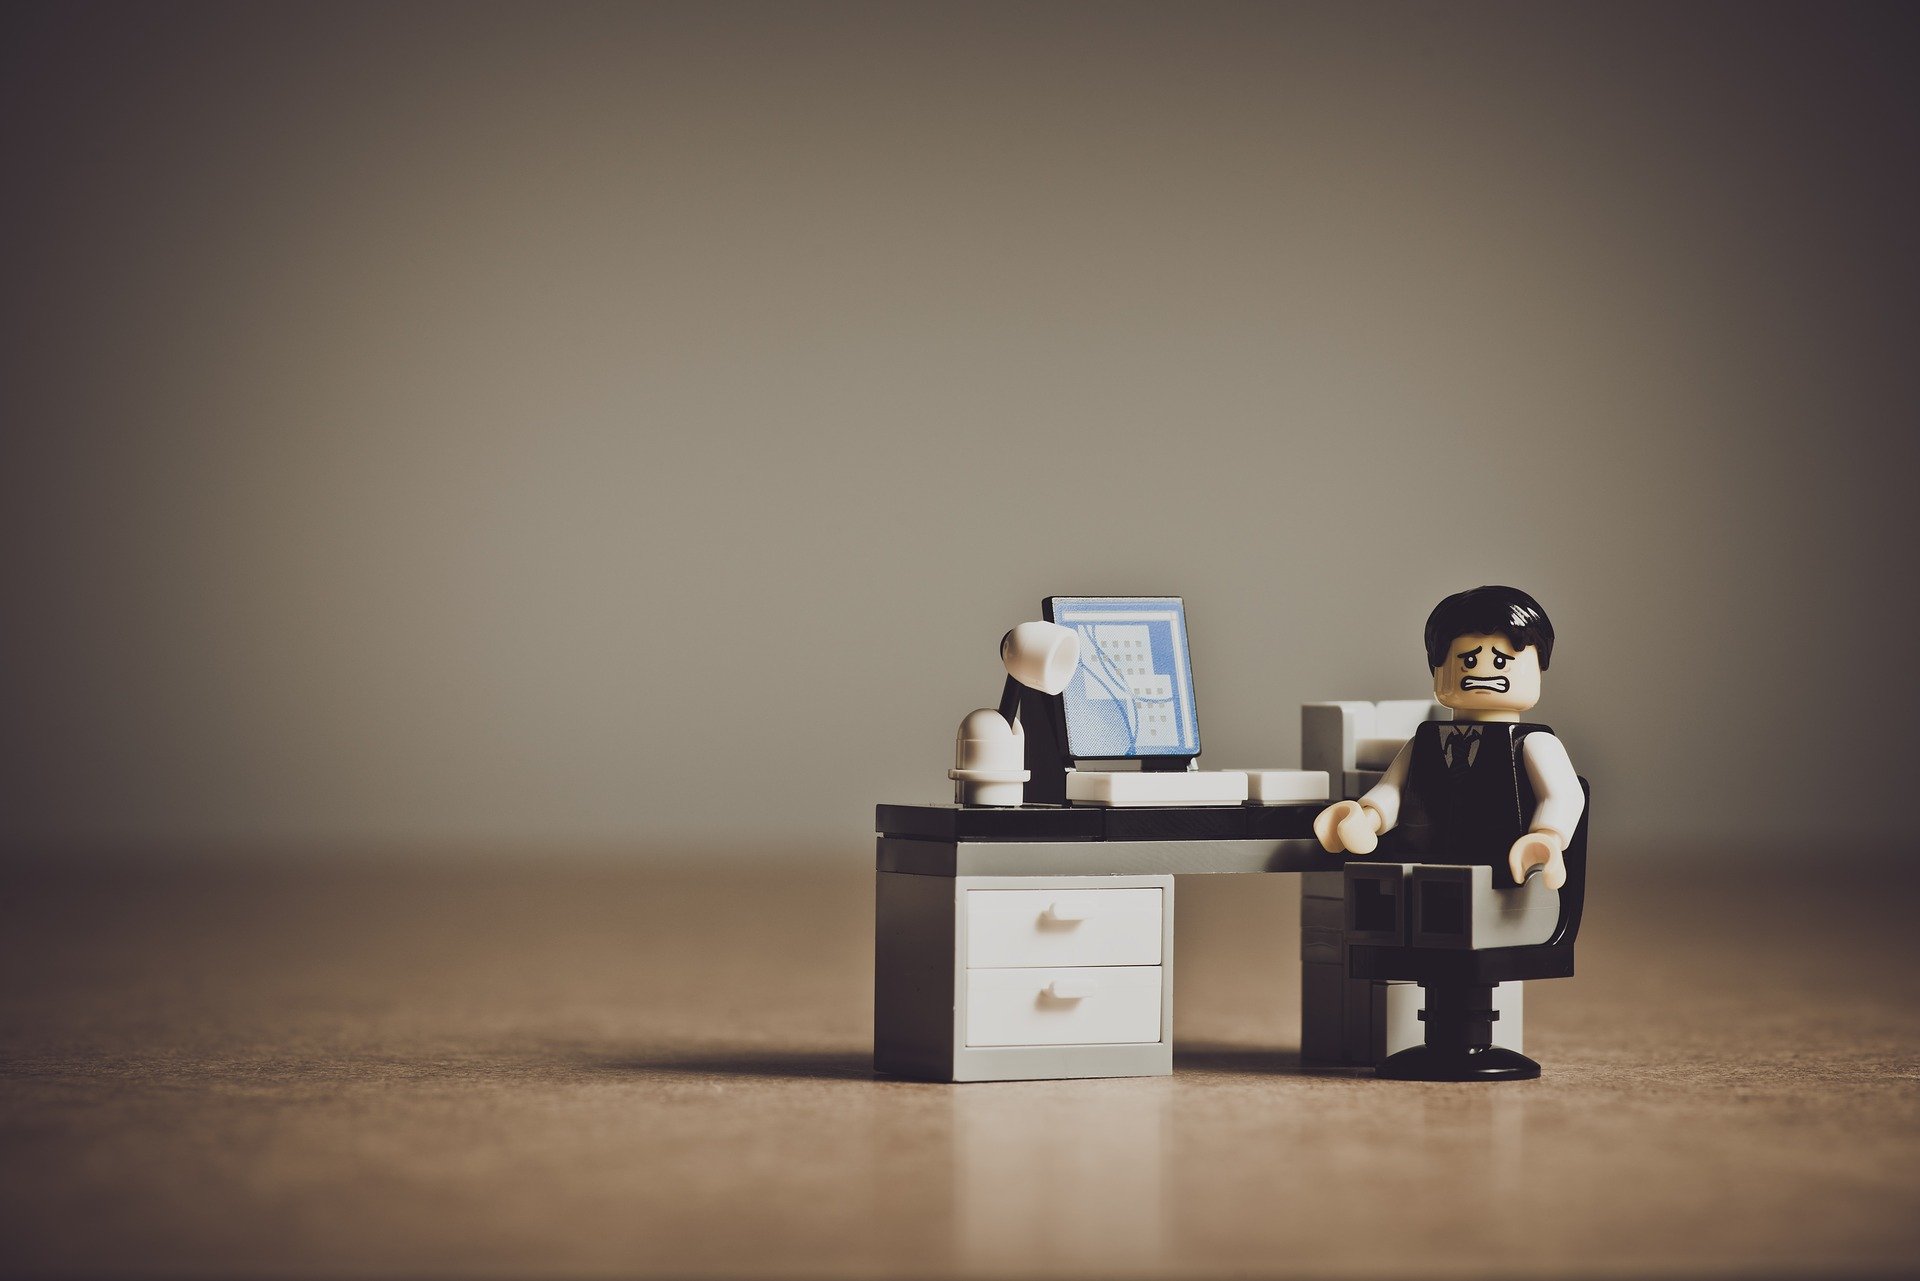 Eine verzweifelte Lego-Figur an einem Schreibtisch mit Computer